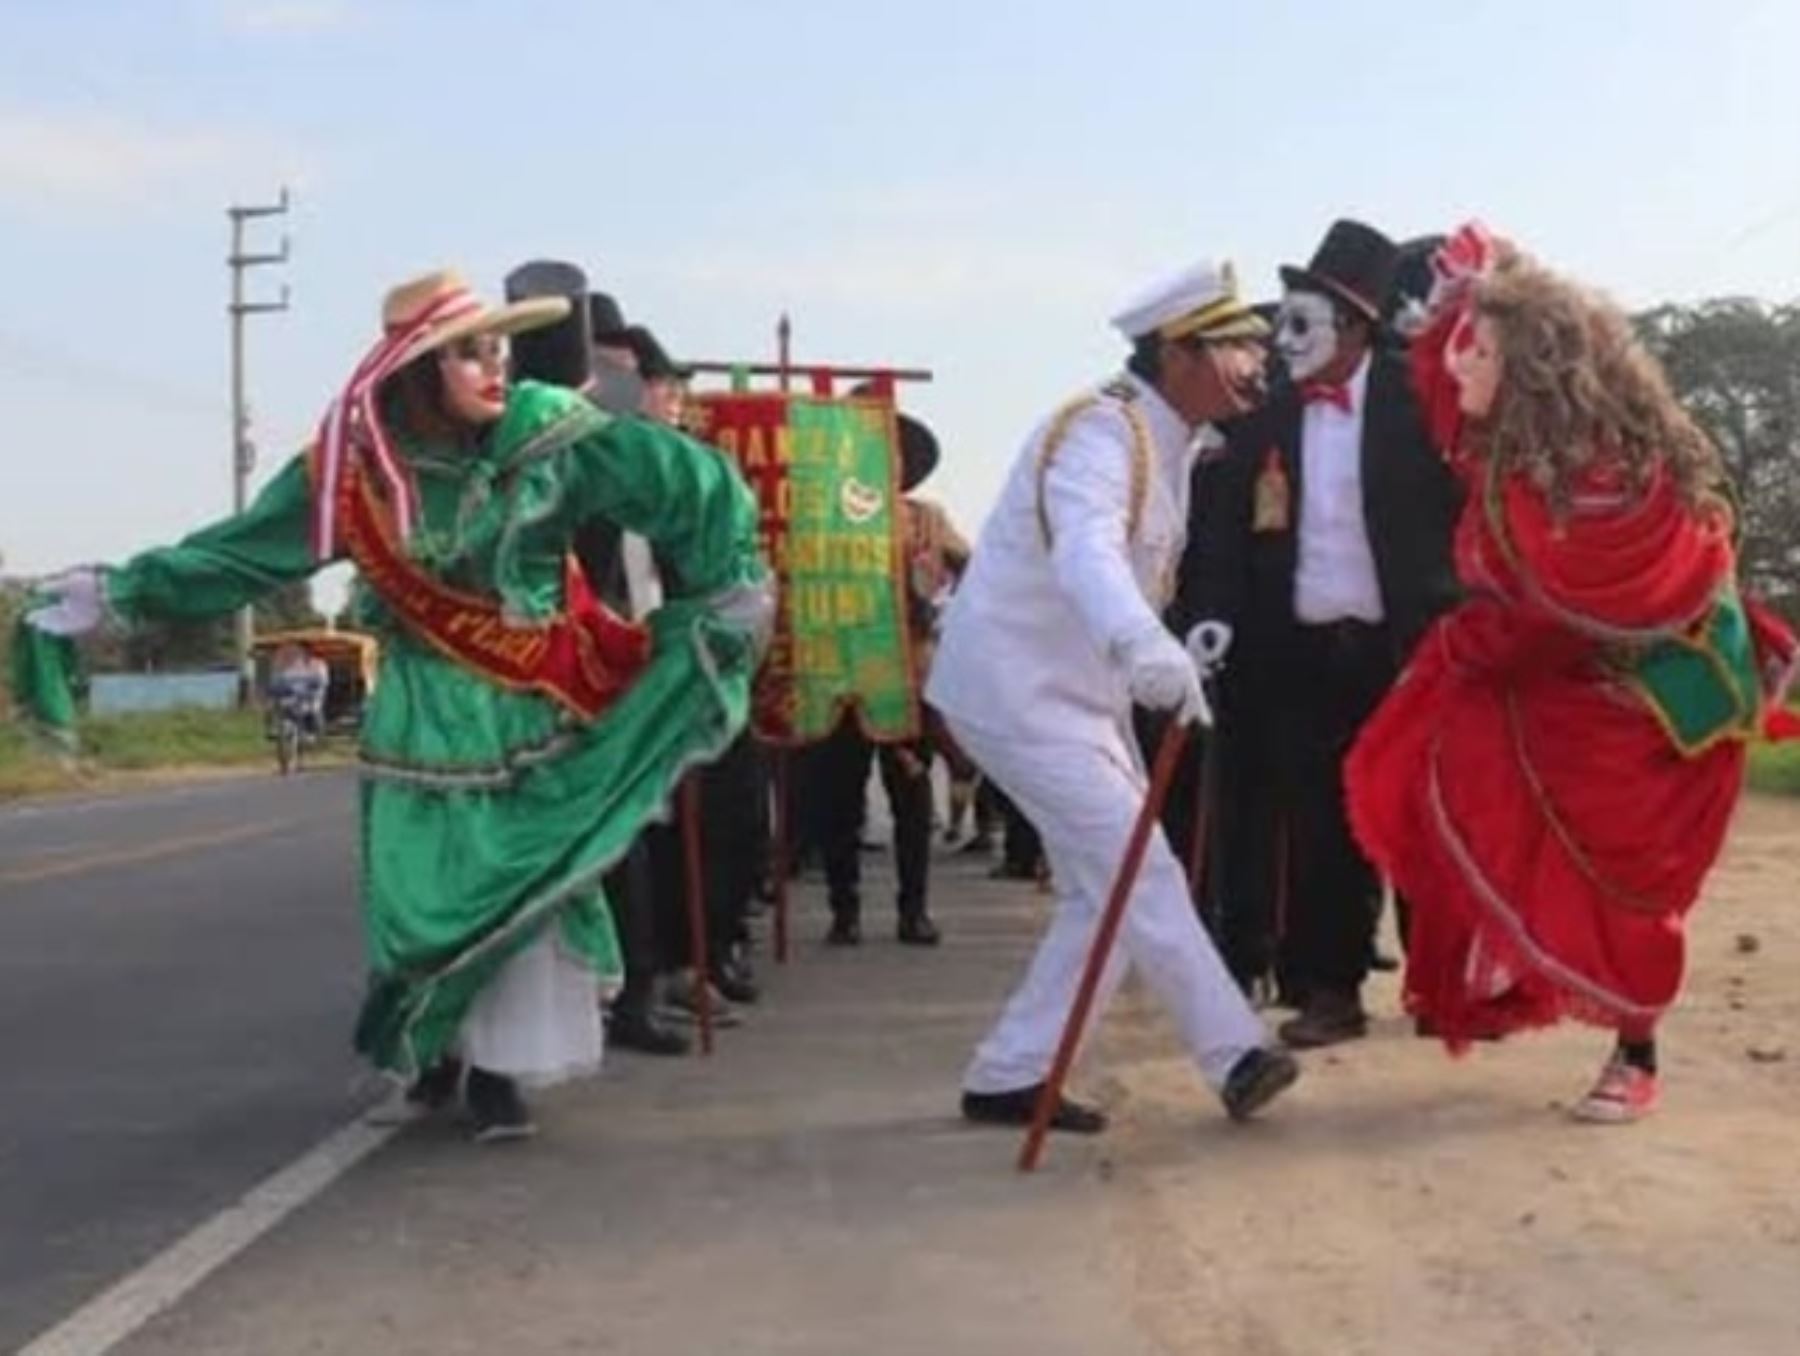 La danza Los Margaritos o Ingleses de Mochumí (Lambayeque) fue reconocida como Patrimonio Cultural de la Nación por el Ministerio de Cultura. Foto cortesía: Danza Folklórica de los Margaritos de Mochumí/Facebook